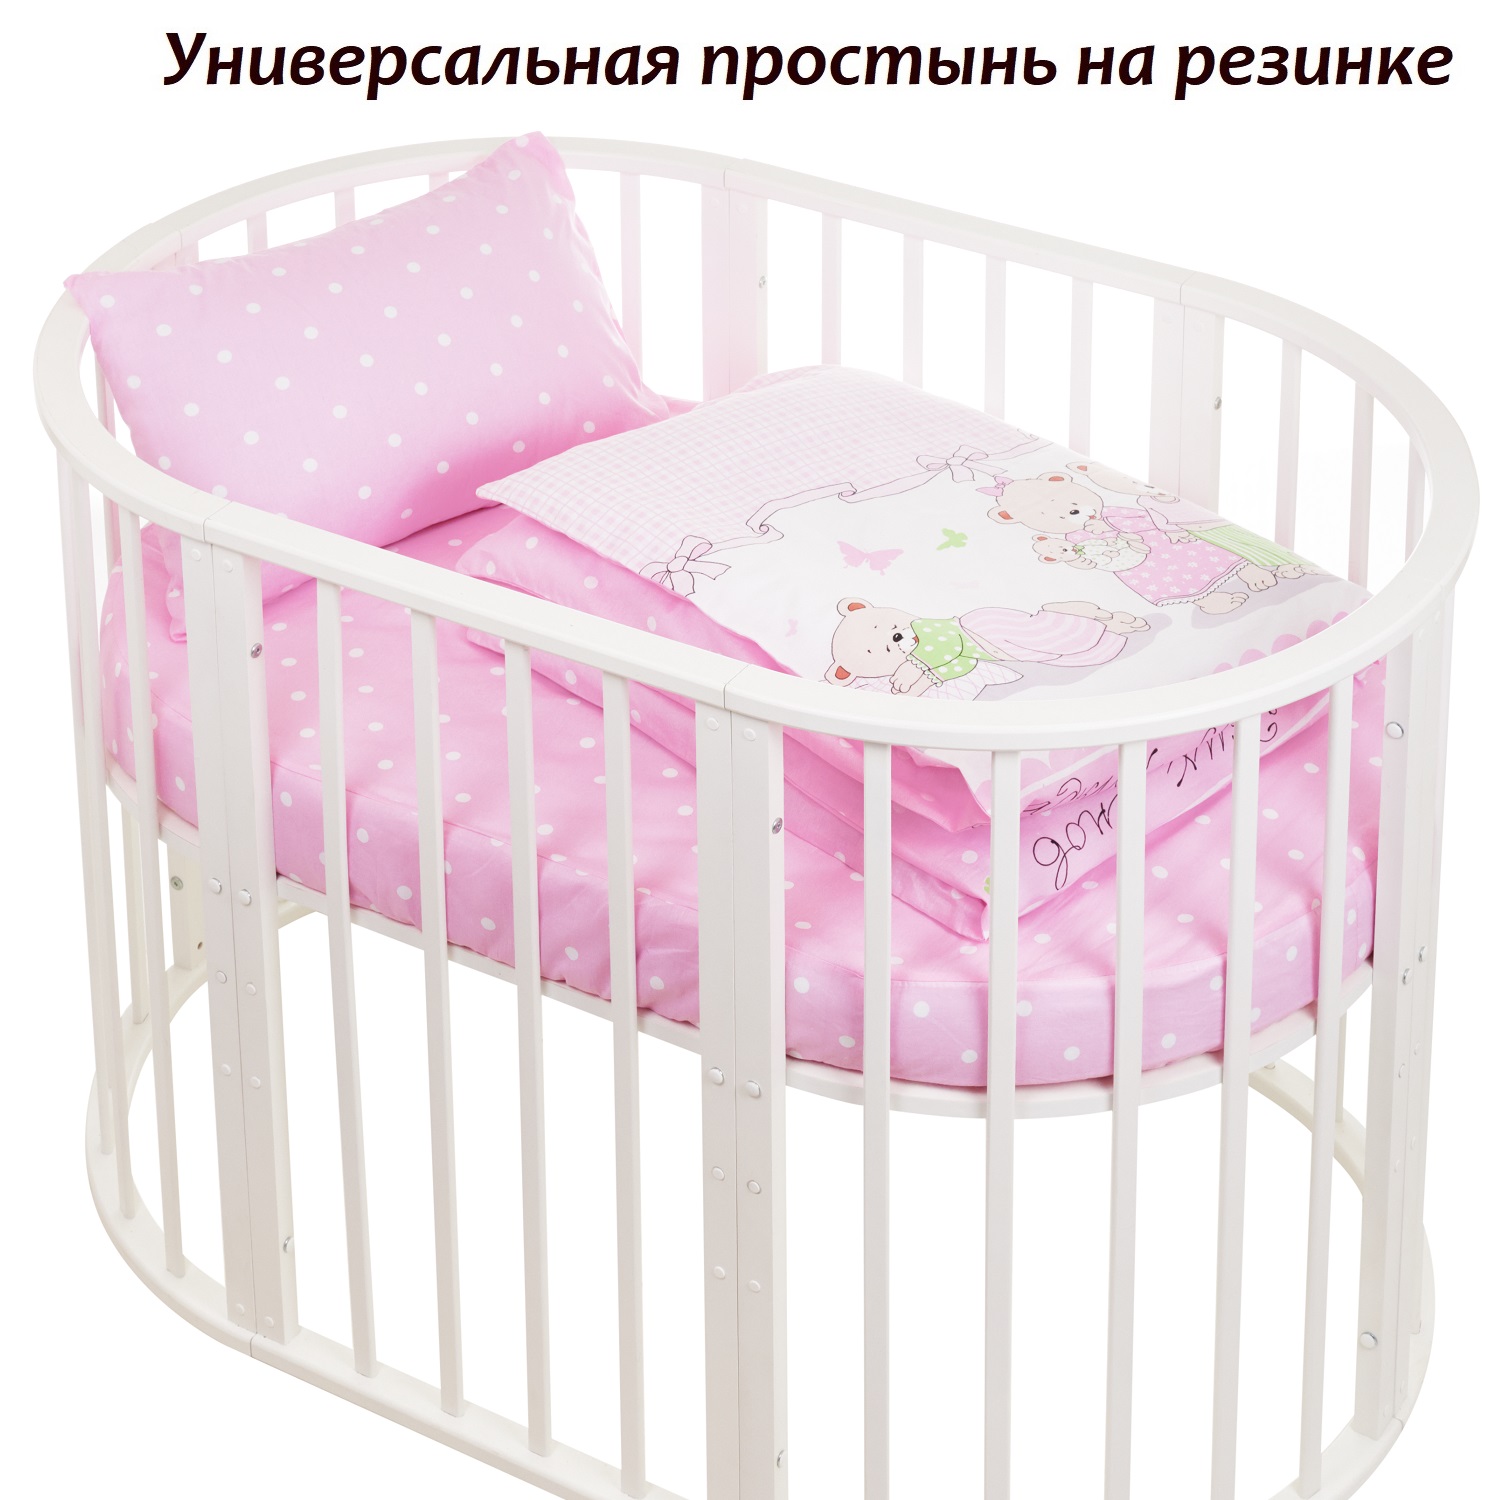 Комплект постельного белья Lemony kids розовый в горошек 3 предмета - фото 3